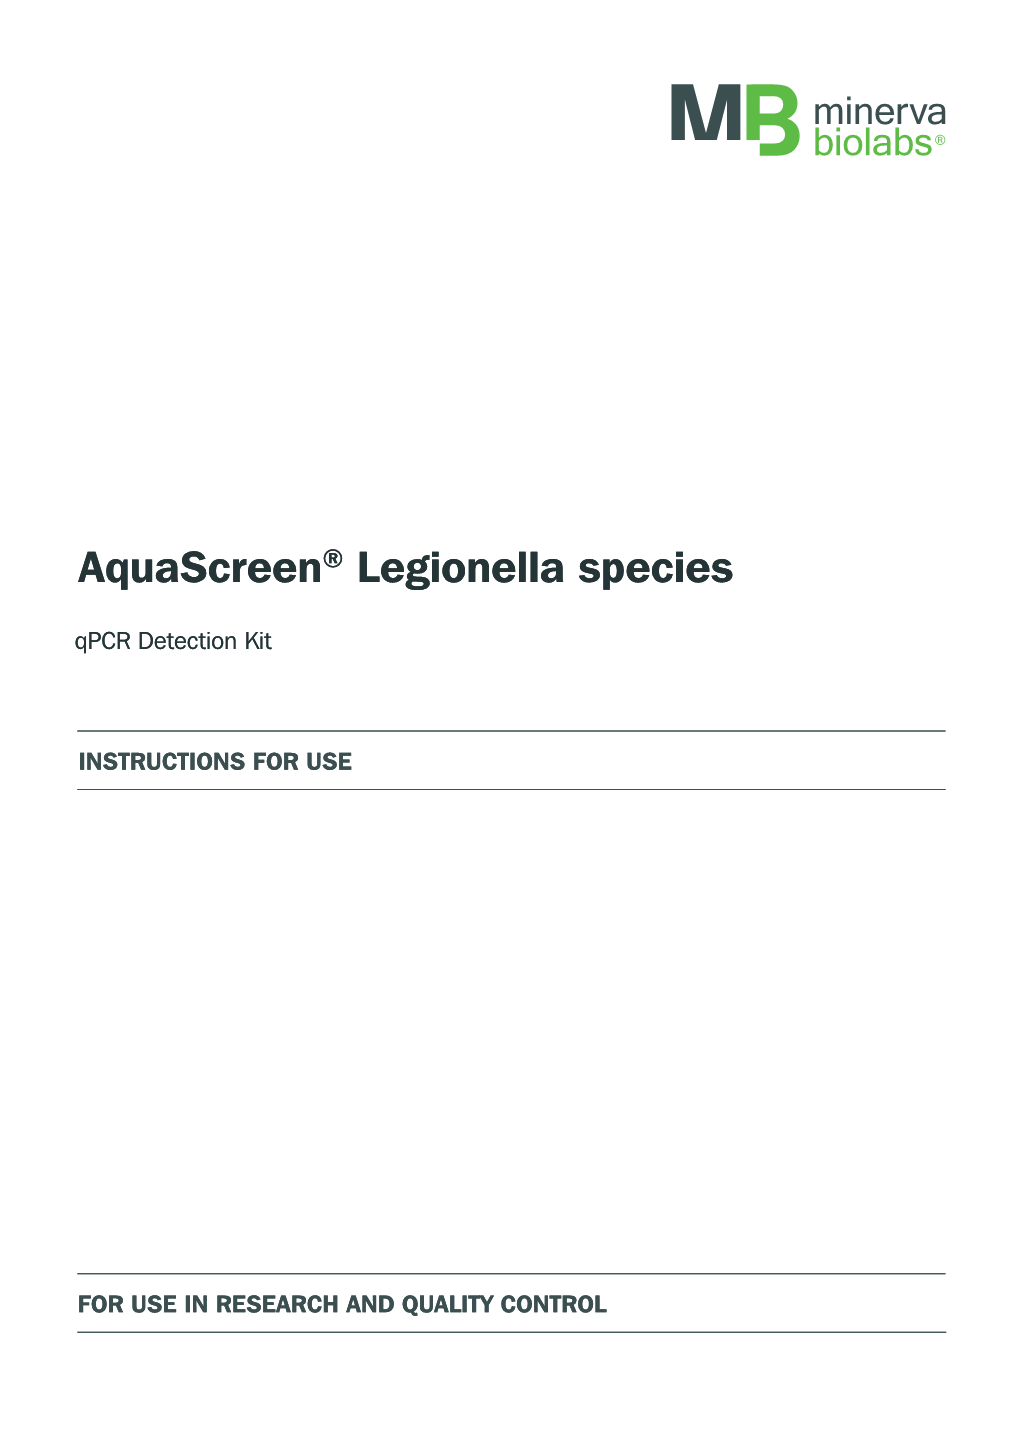 Aquascreen® Legionella Species Aquascreen® Legionella Species